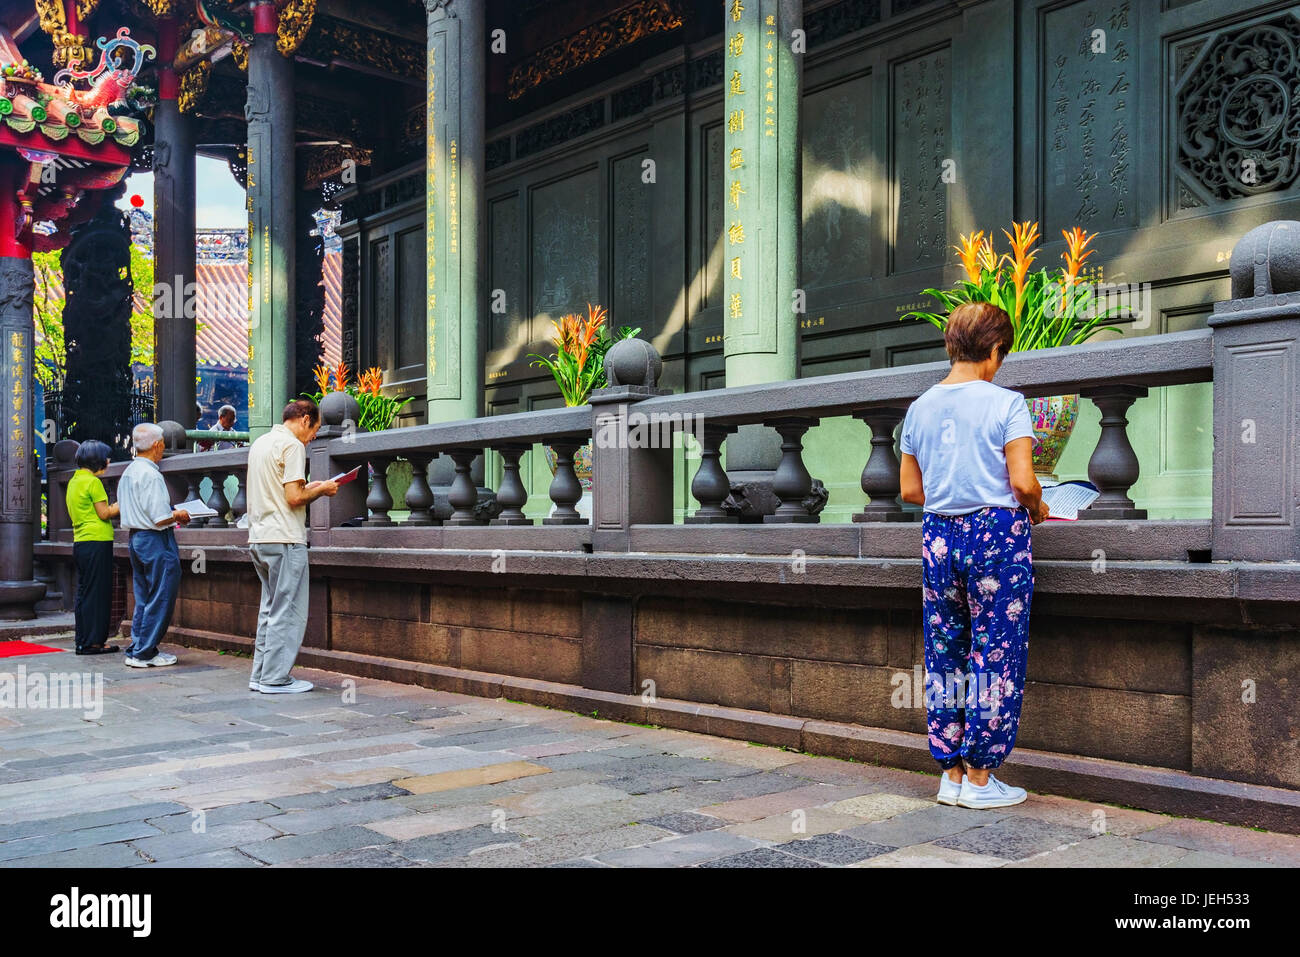 TAIPEI, Taiwan - 07 giugno: questa è una scena del tempio di persone in preghiera al tempio Longshan che è un famoso tempio buddista con entrambi i turisti e la gente del posto Foto Stock